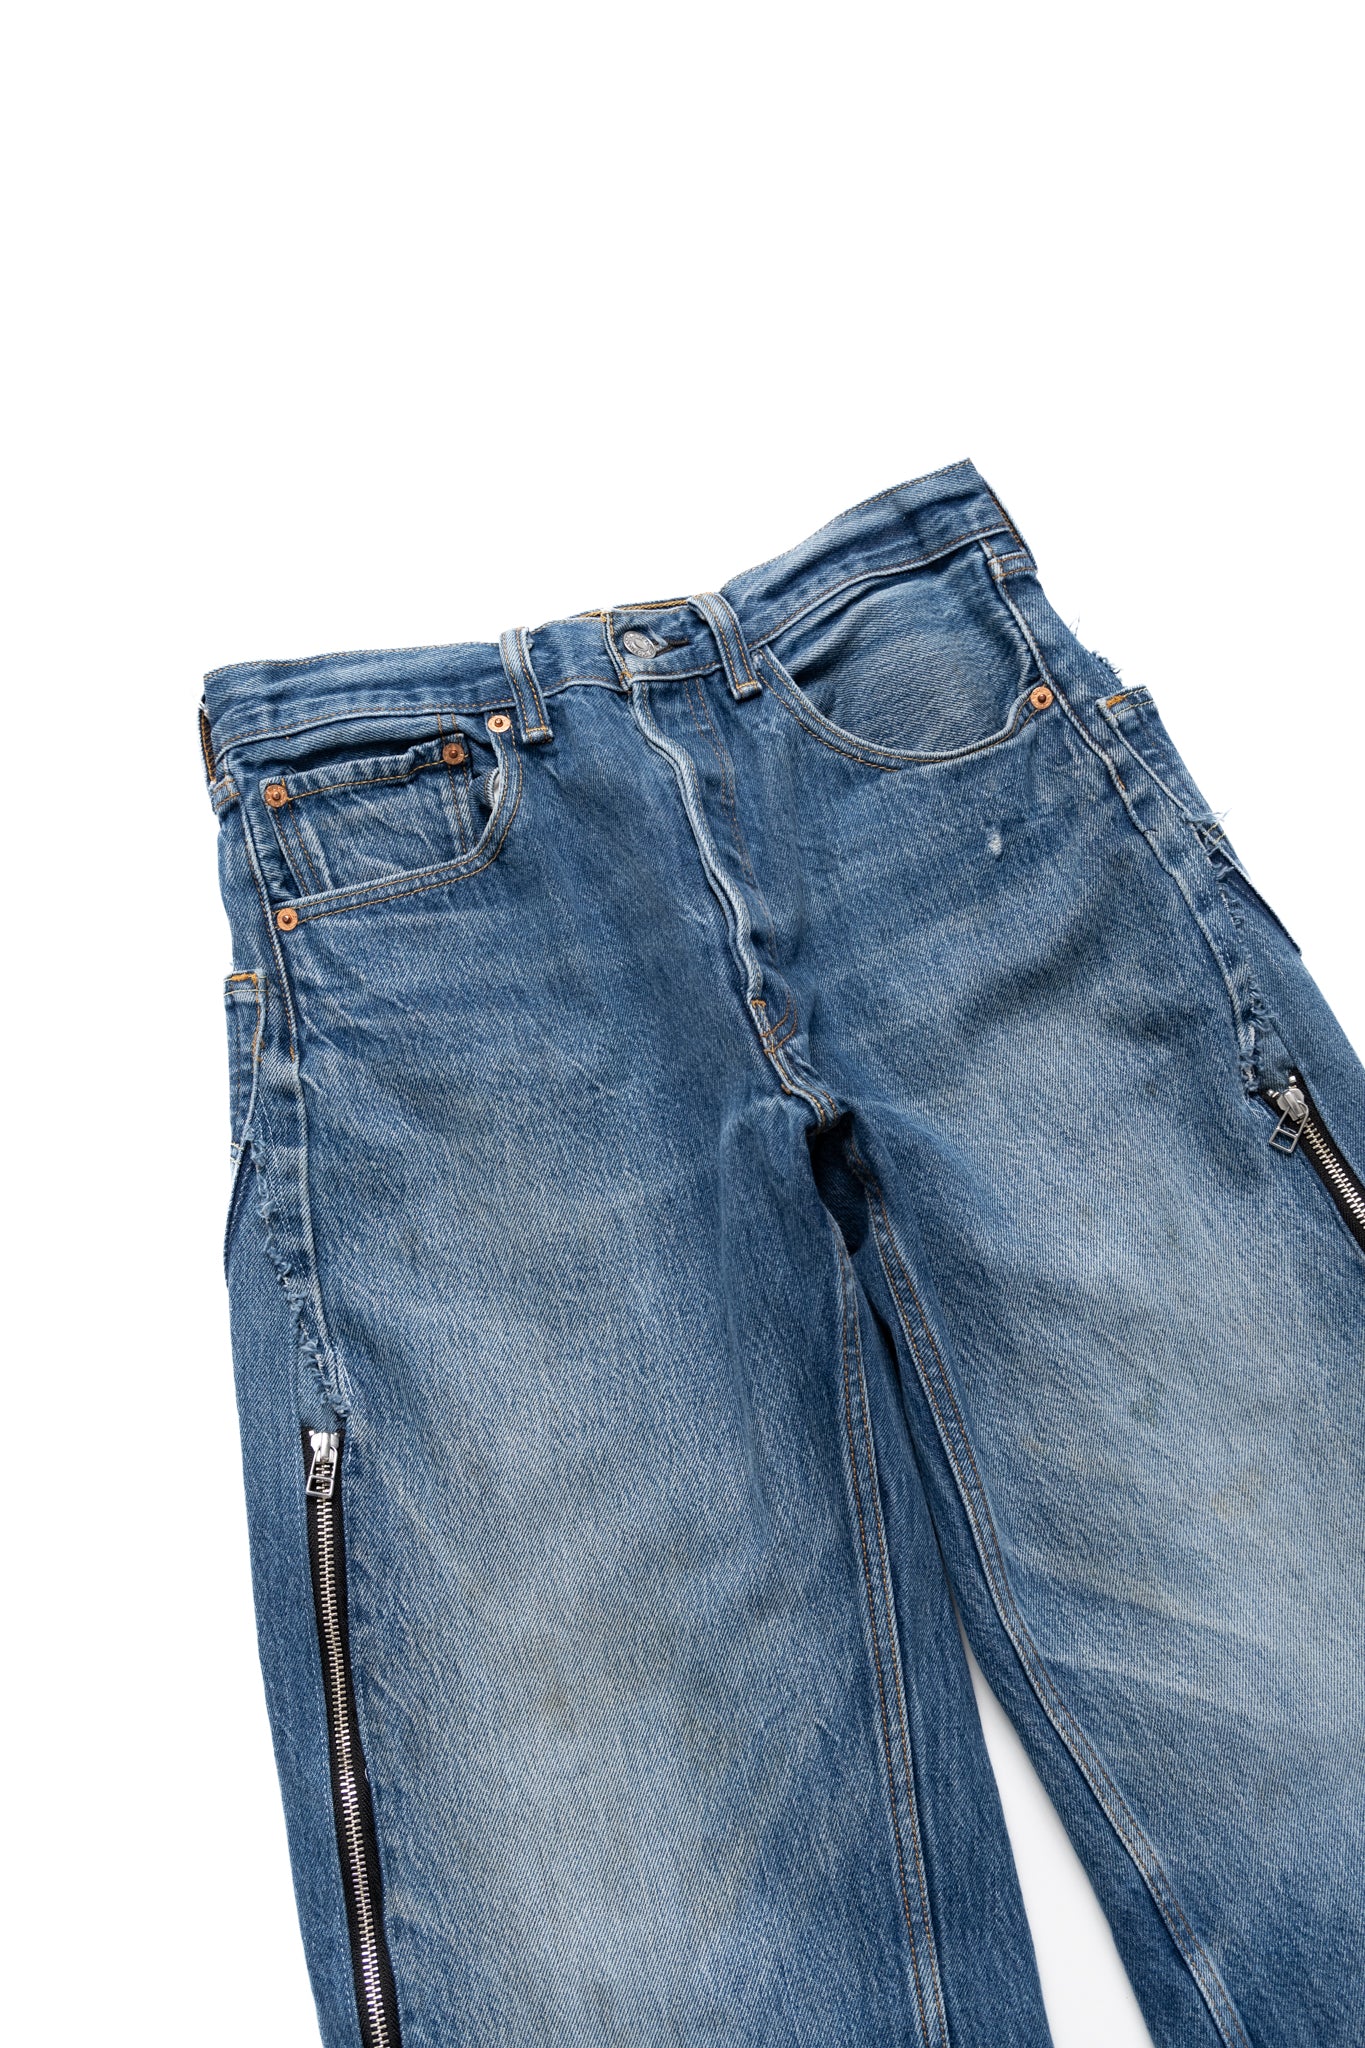 Zip Baggy Jeans Blue - M (2)